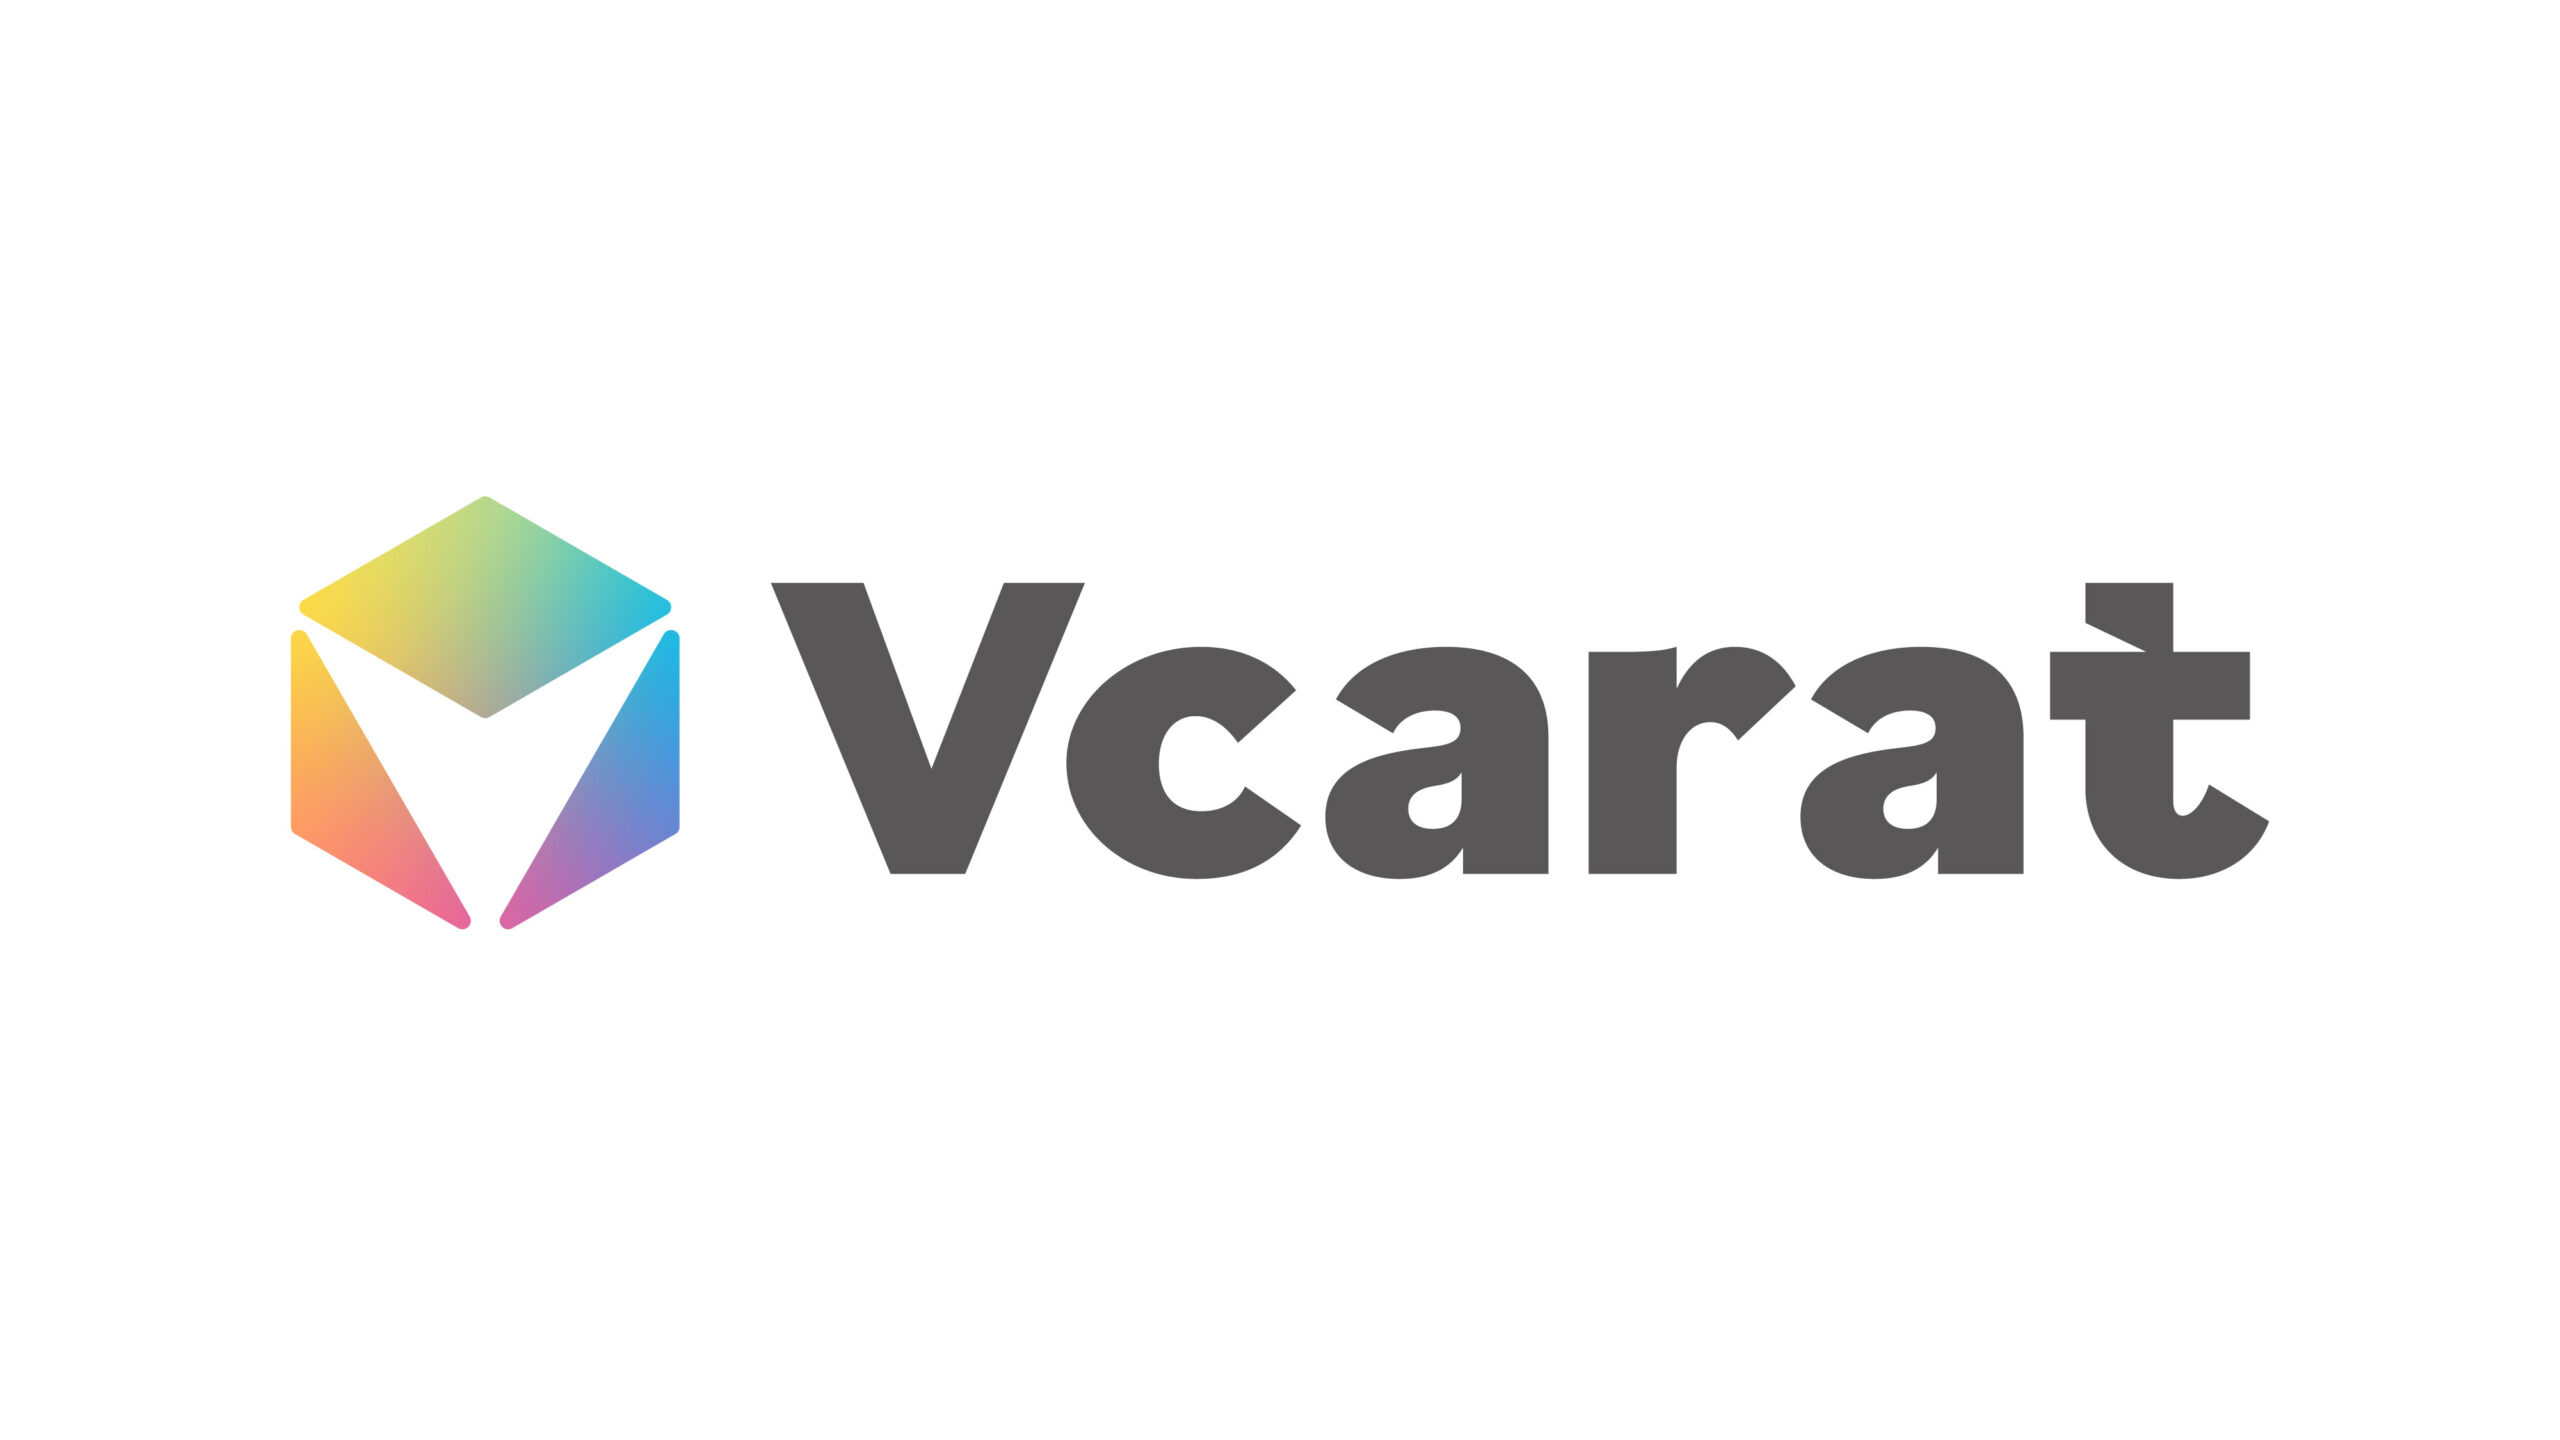 個人Vtuberエージェンシー「Vcarat」公式サイトを公開しました。